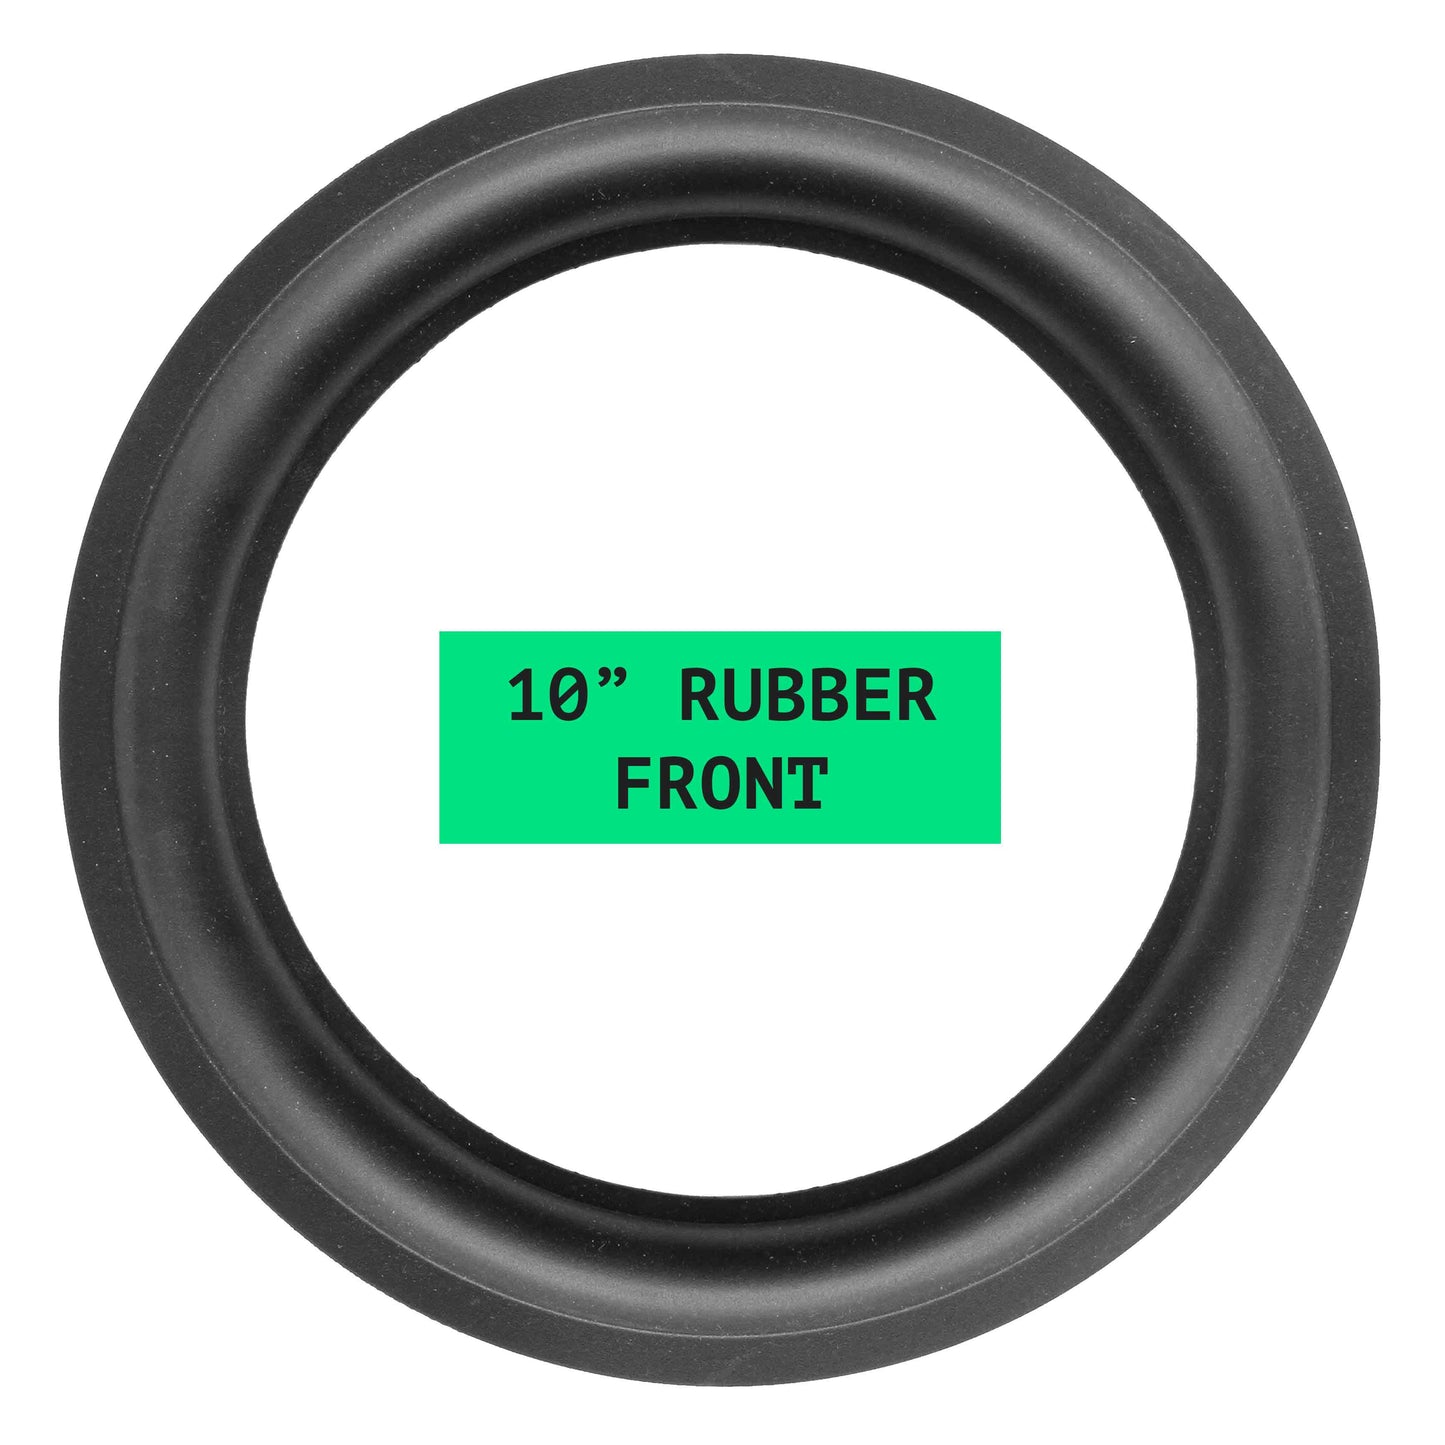 10" Rubber Repair Kit (B) - OD:245MM ID:175MM